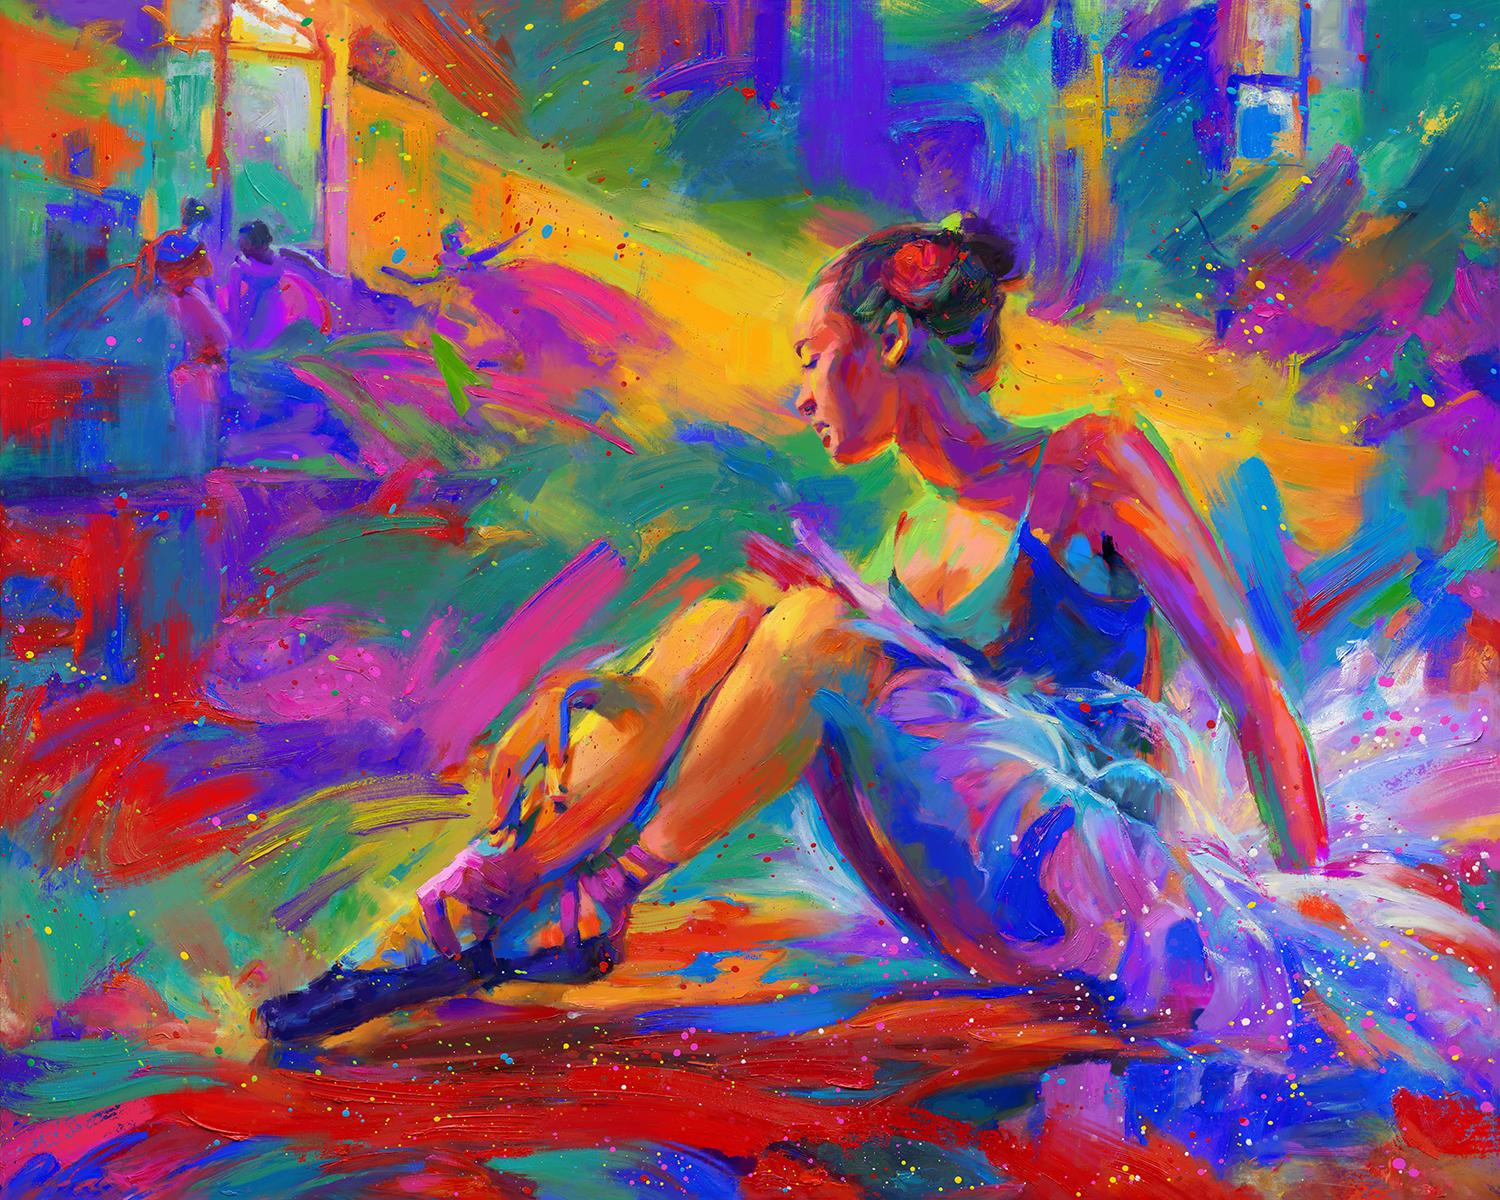 Ballerina - Öl auf Leinwand Gemälde von Blend Cota 2018 - 38"x60"